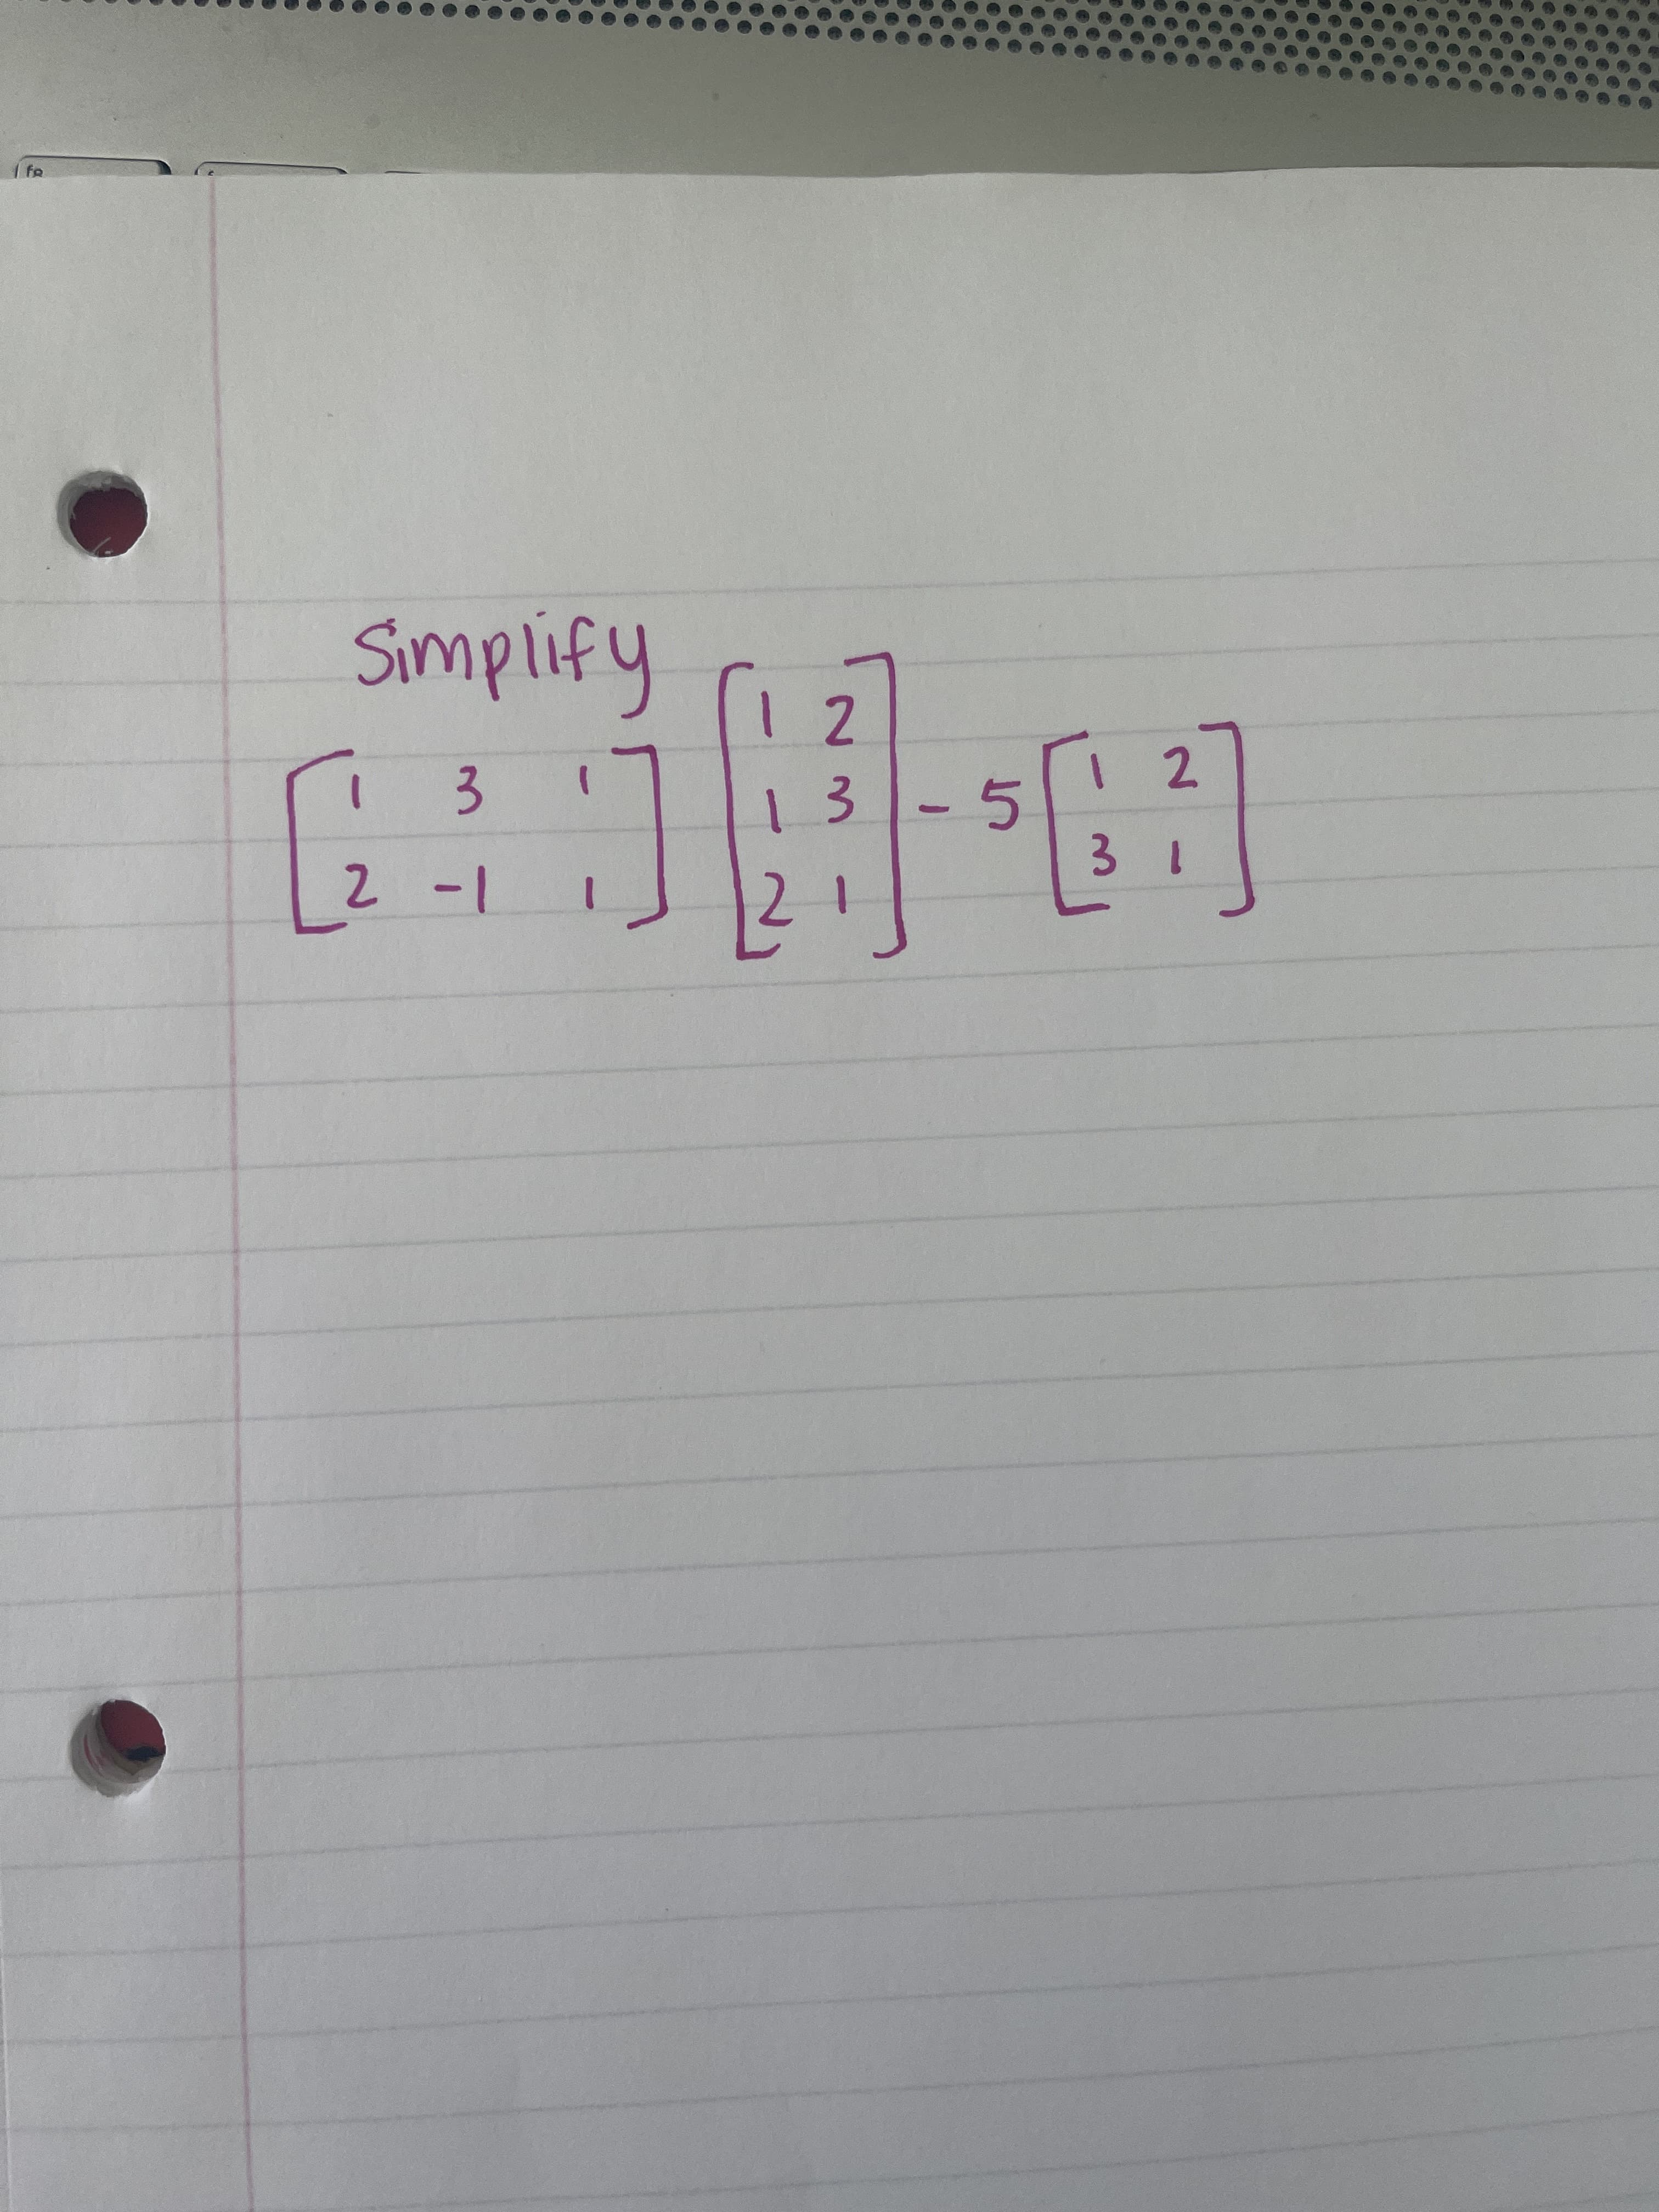 1 fo
Simplify
1 2
1 2
13
3.
1 @
